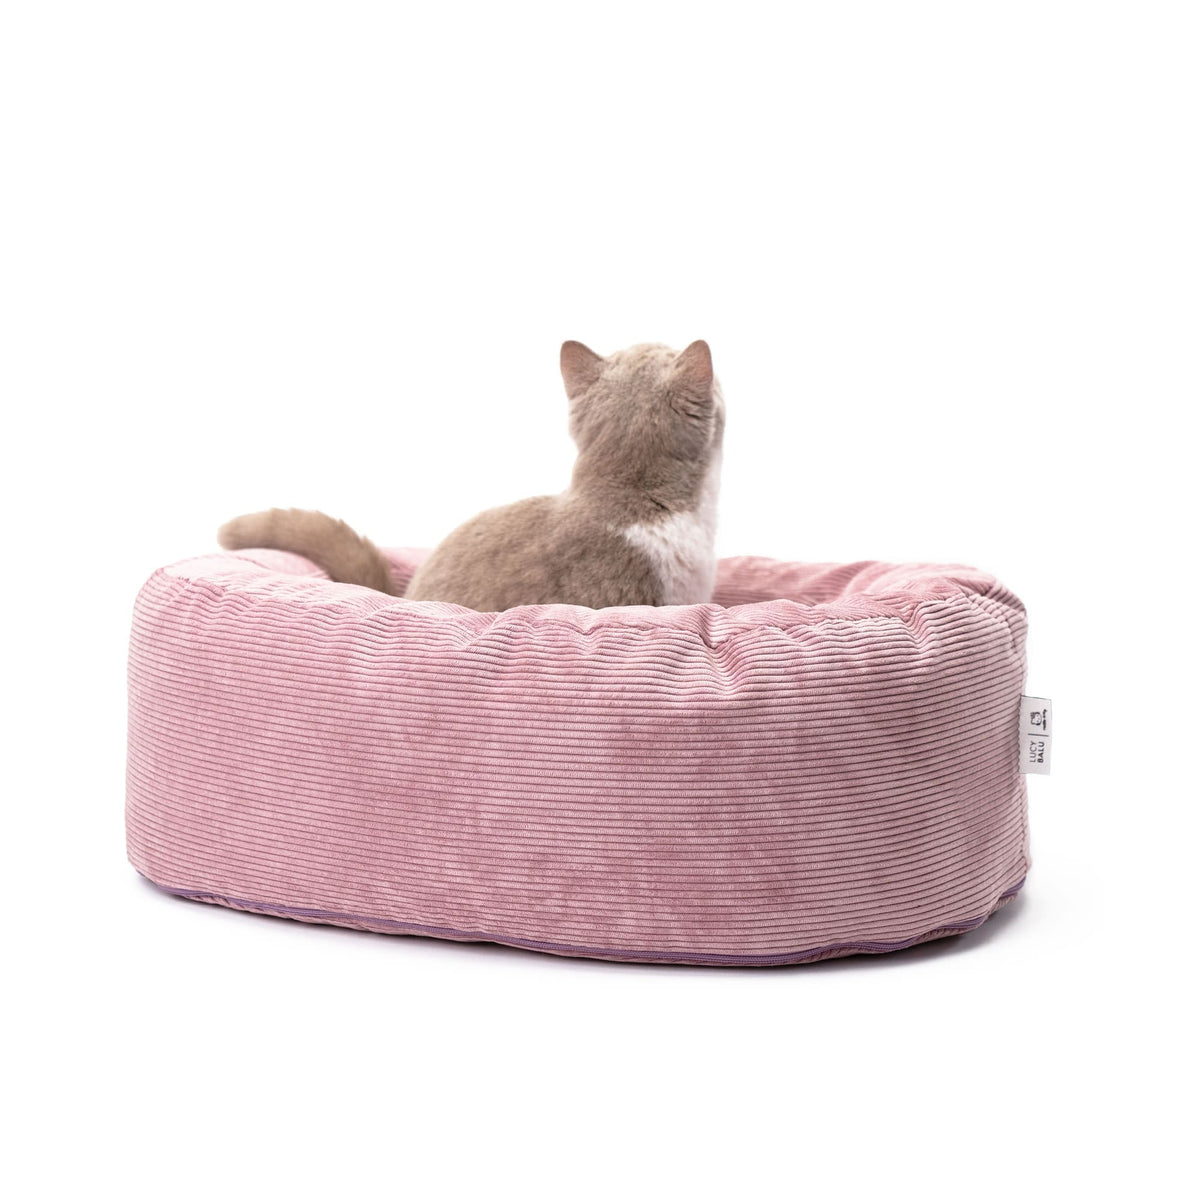 Kuschelbett für Katzen in pink